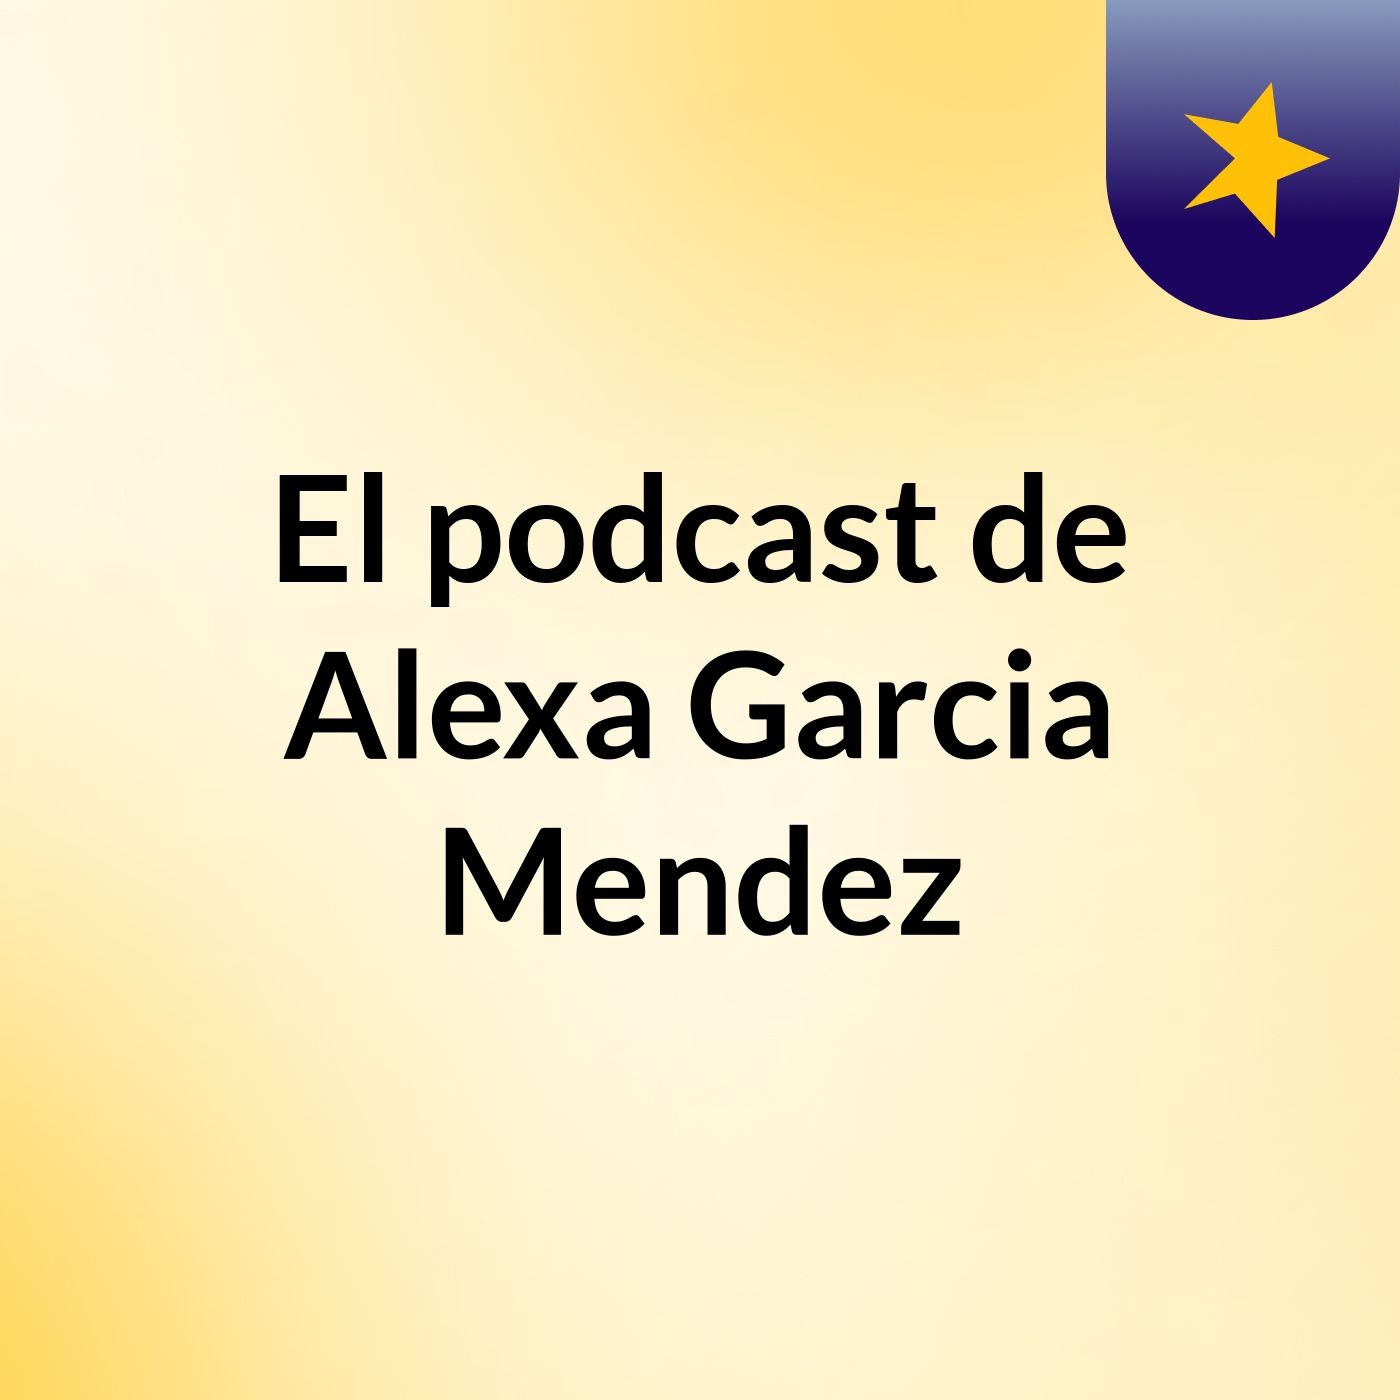 El podcast de Alexa Garcia Mendez